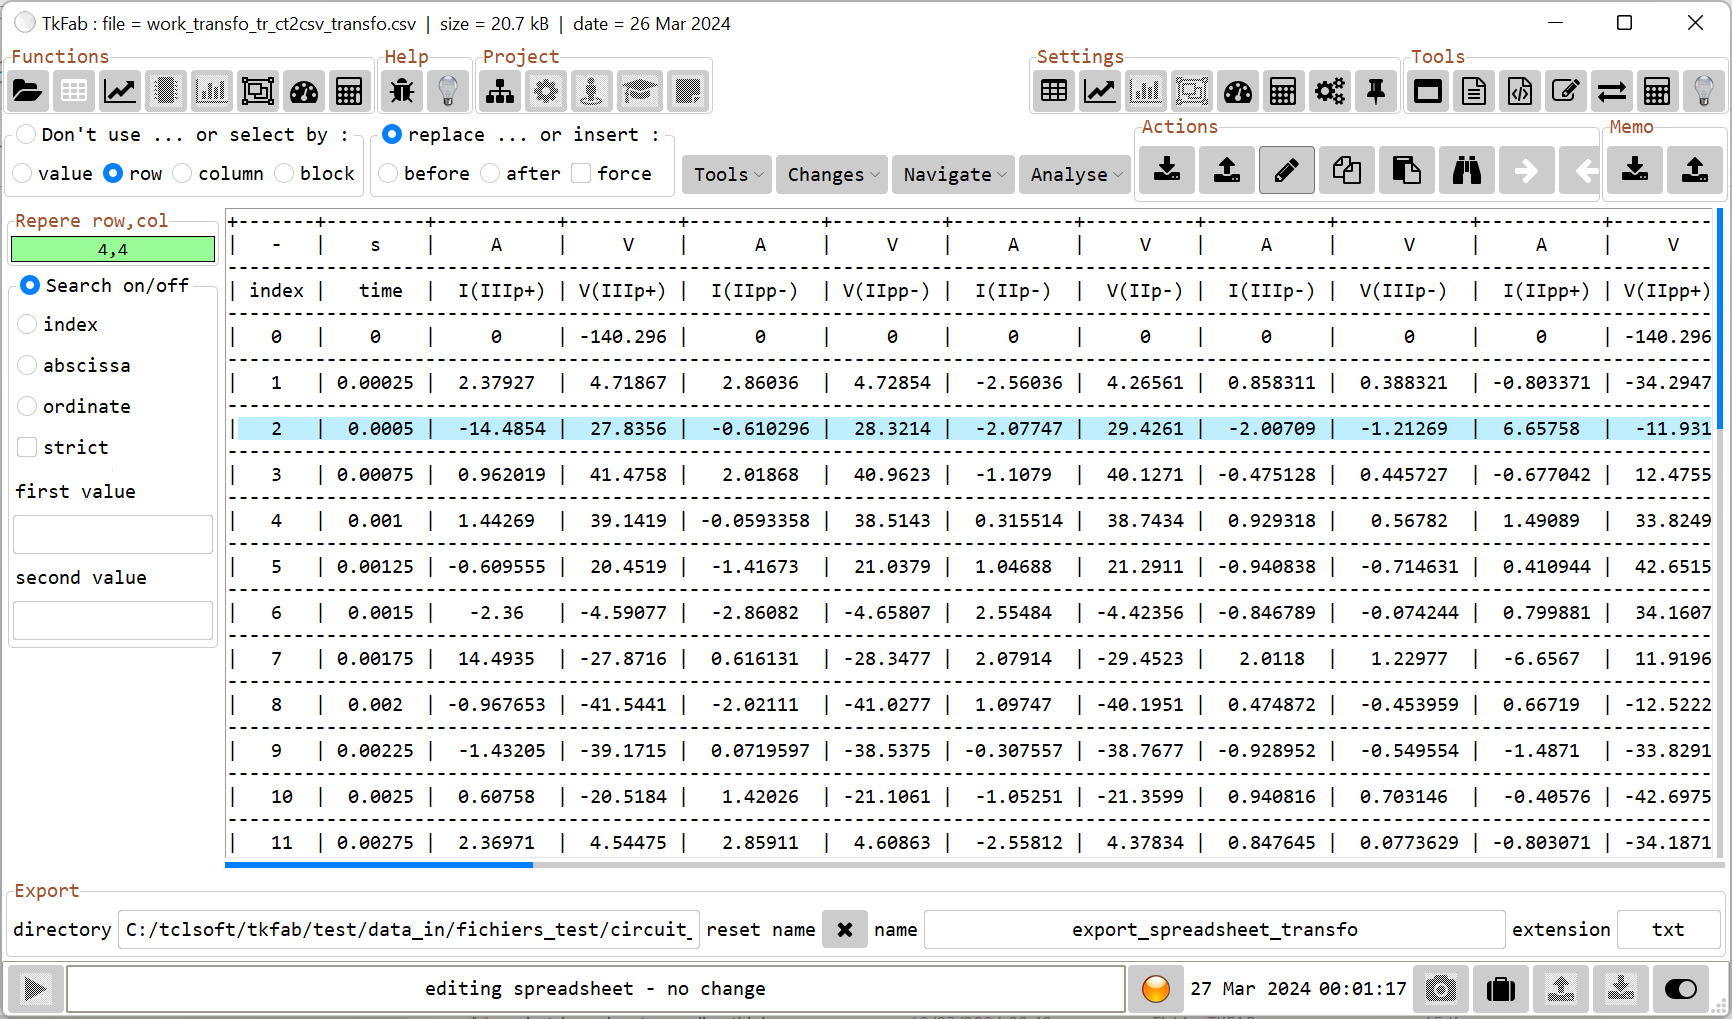 TkFab : Displaying spreadsheet